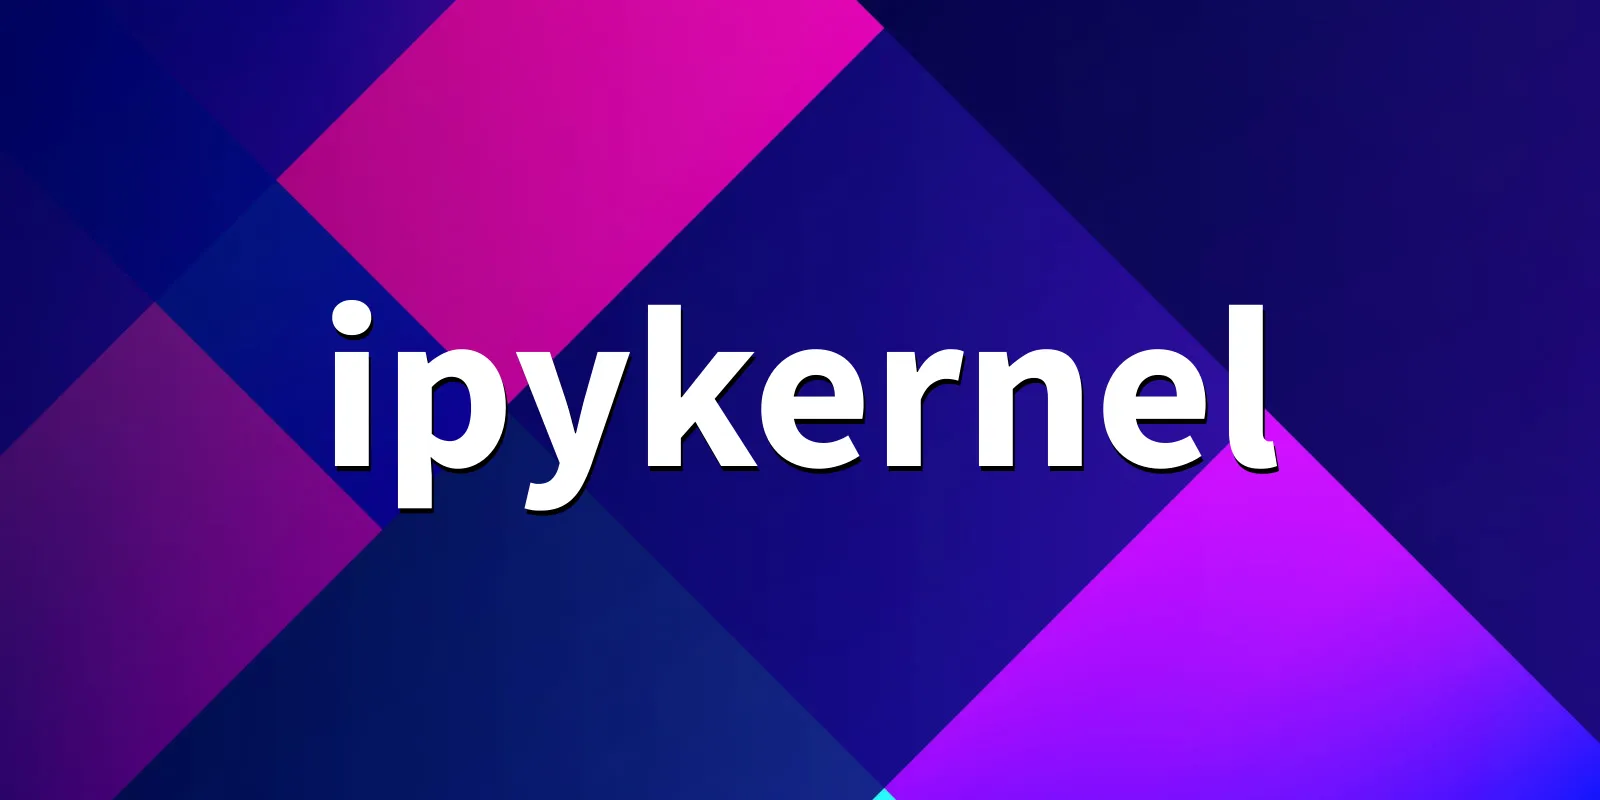 /pkg/i/ipykernel/ipykernel-banner.webp